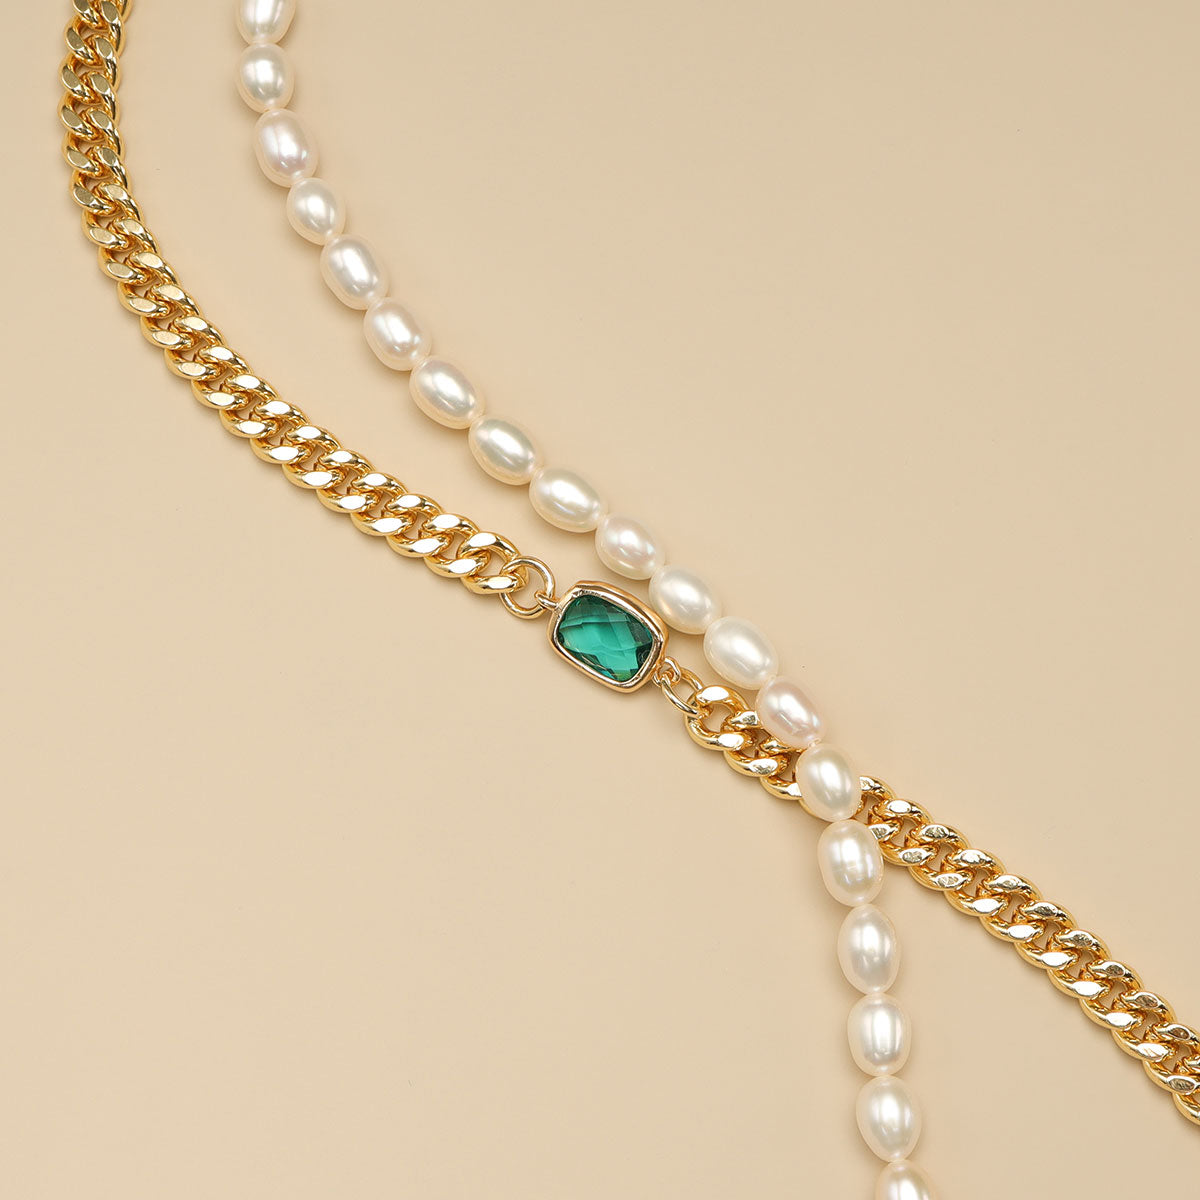 A green pearl bracelet.